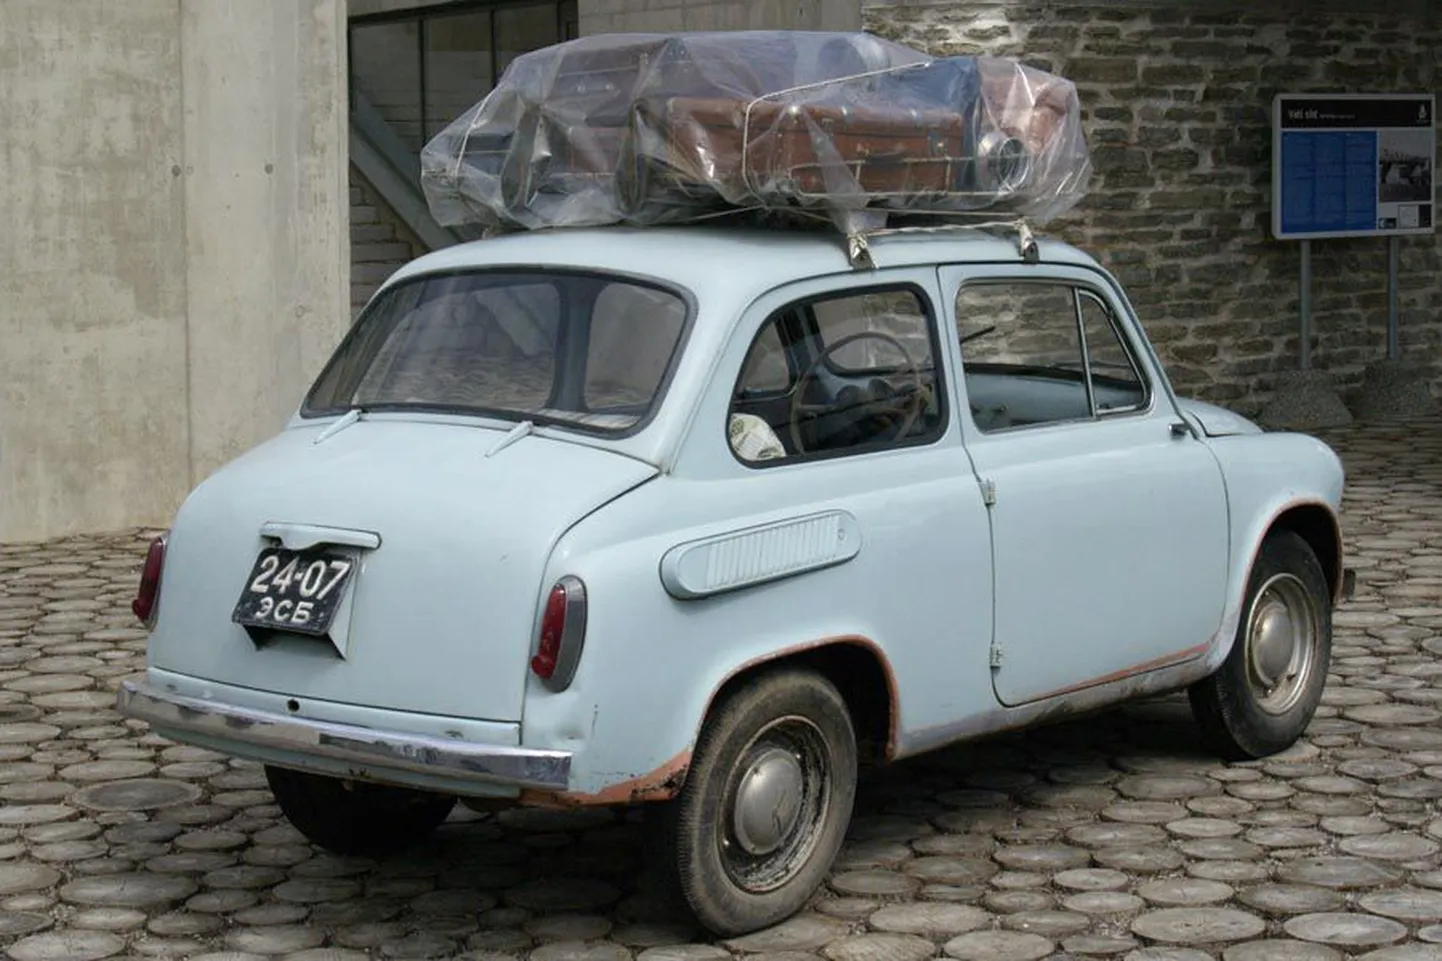 Nõukogude ajal oli tavaline, et reisima minnes seoti kogu pagas auto katusele.